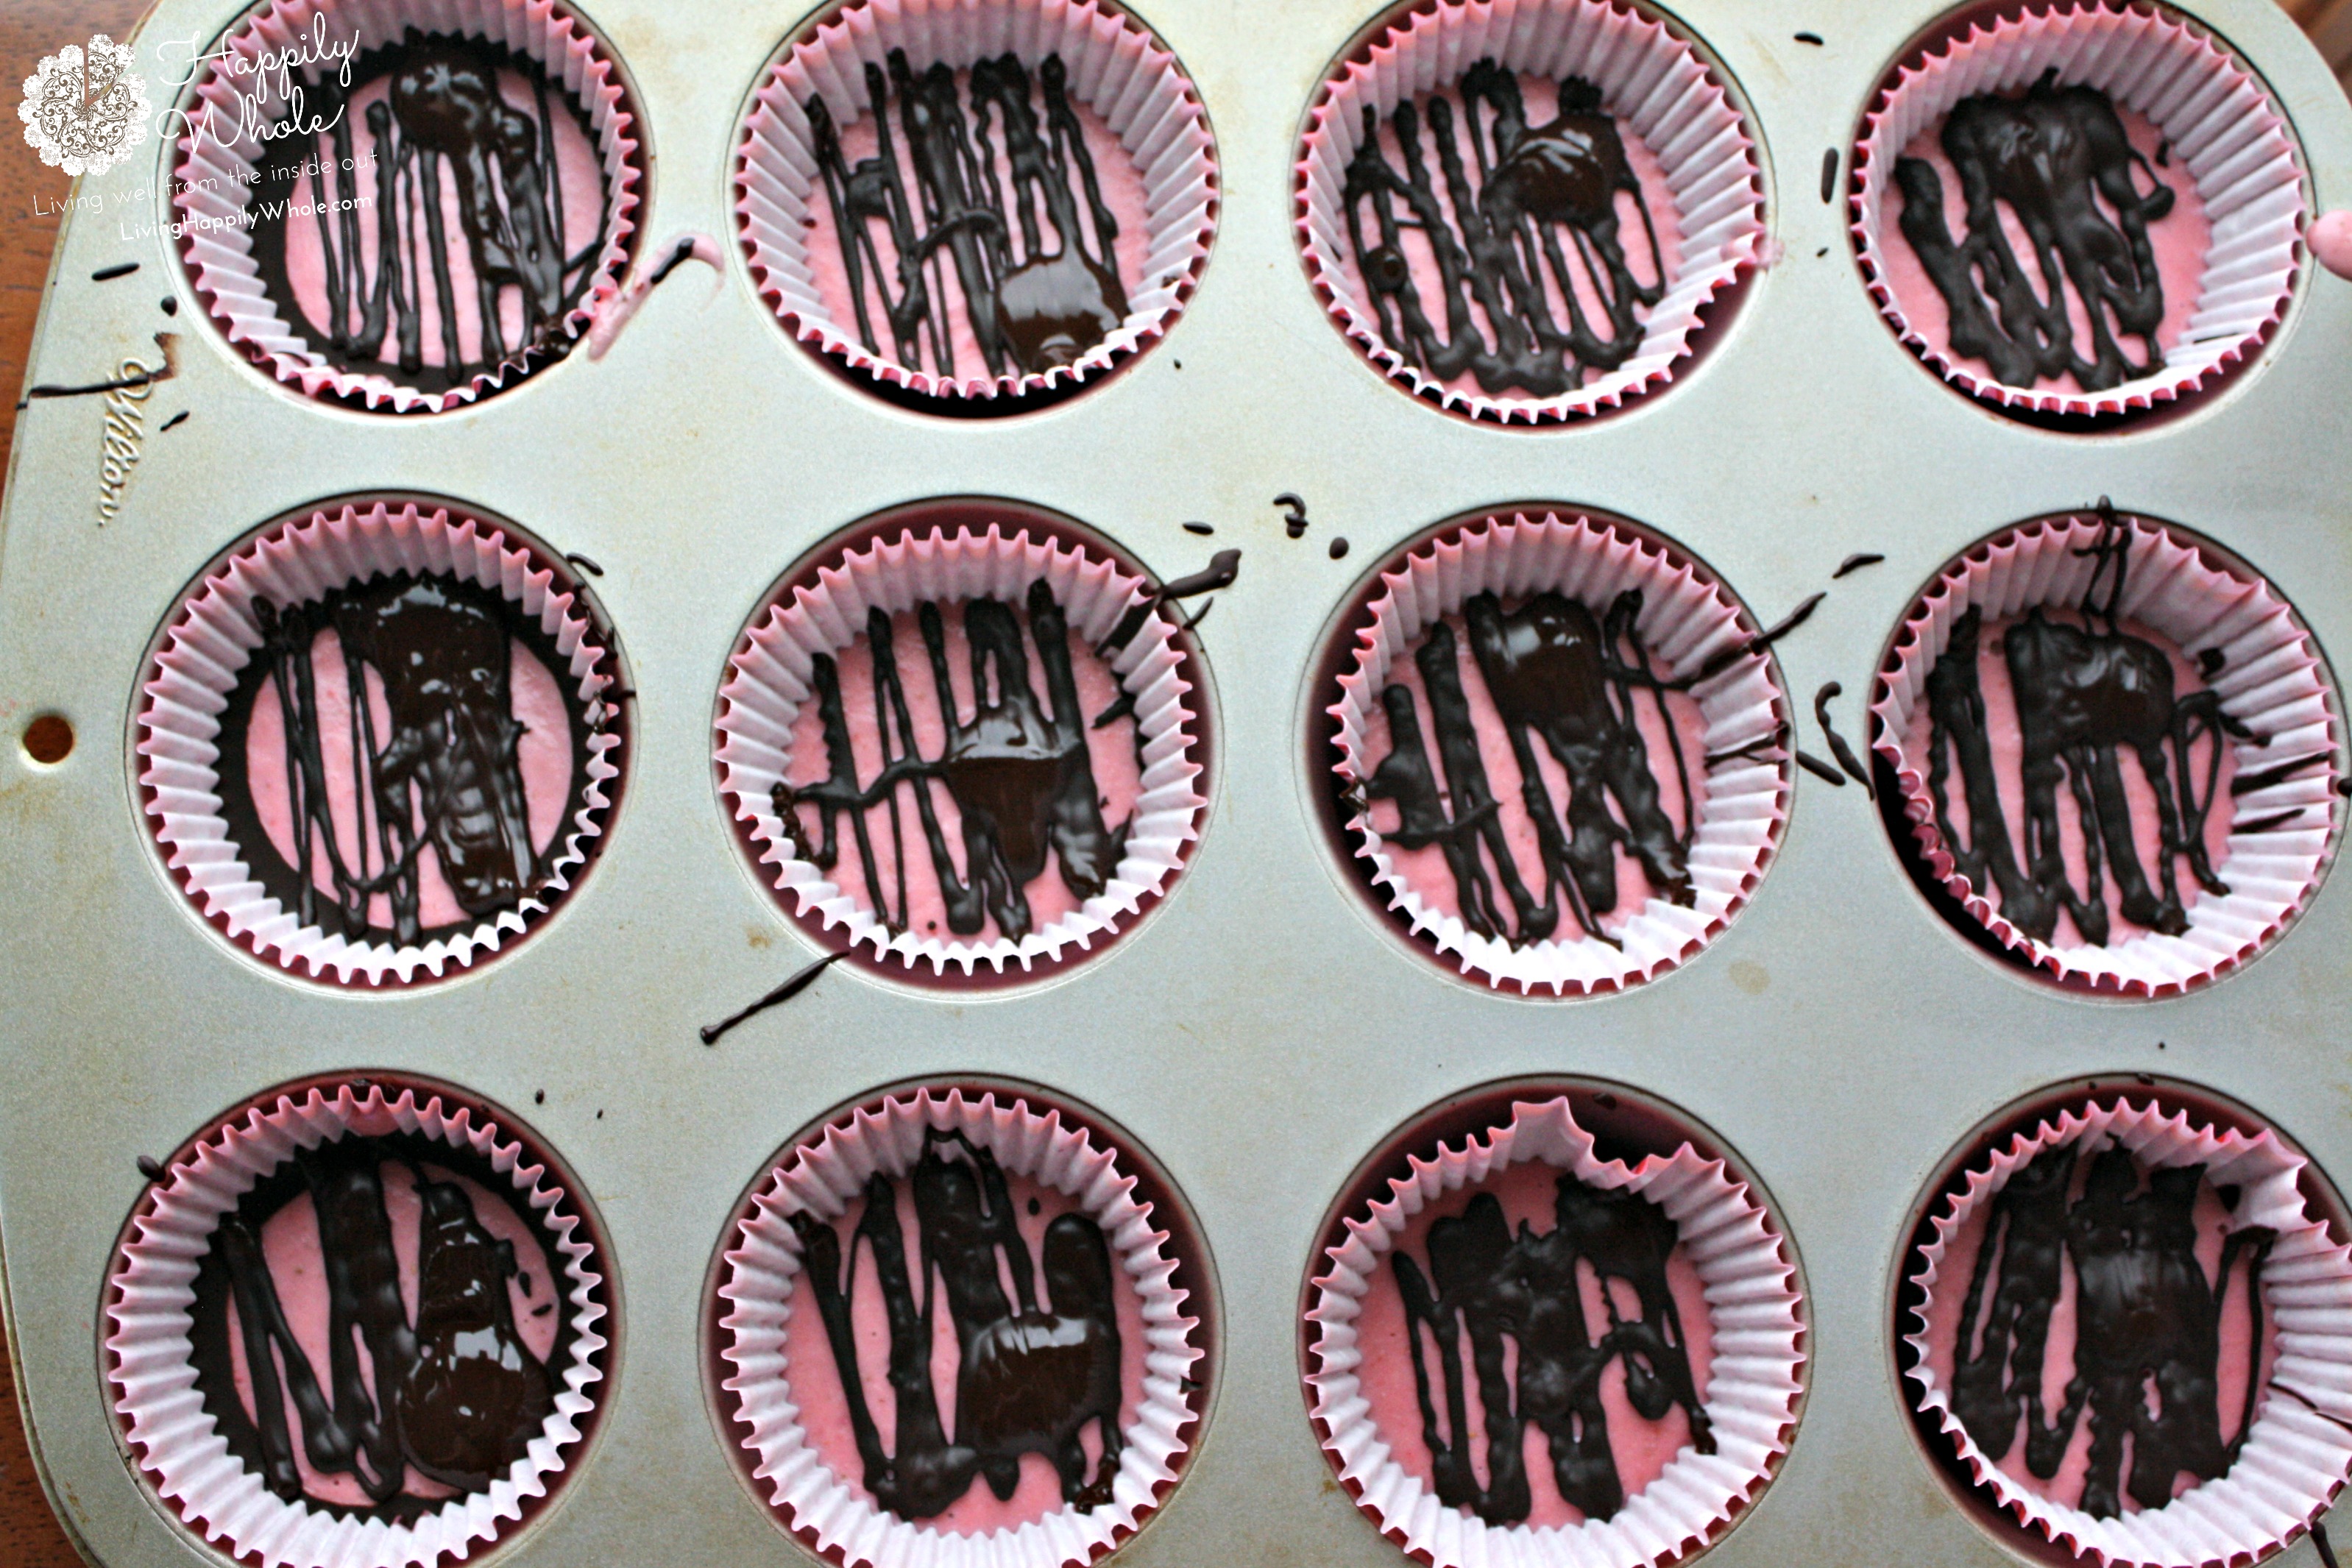 Strawberry Cheesecake Dark Chocolates in the tins